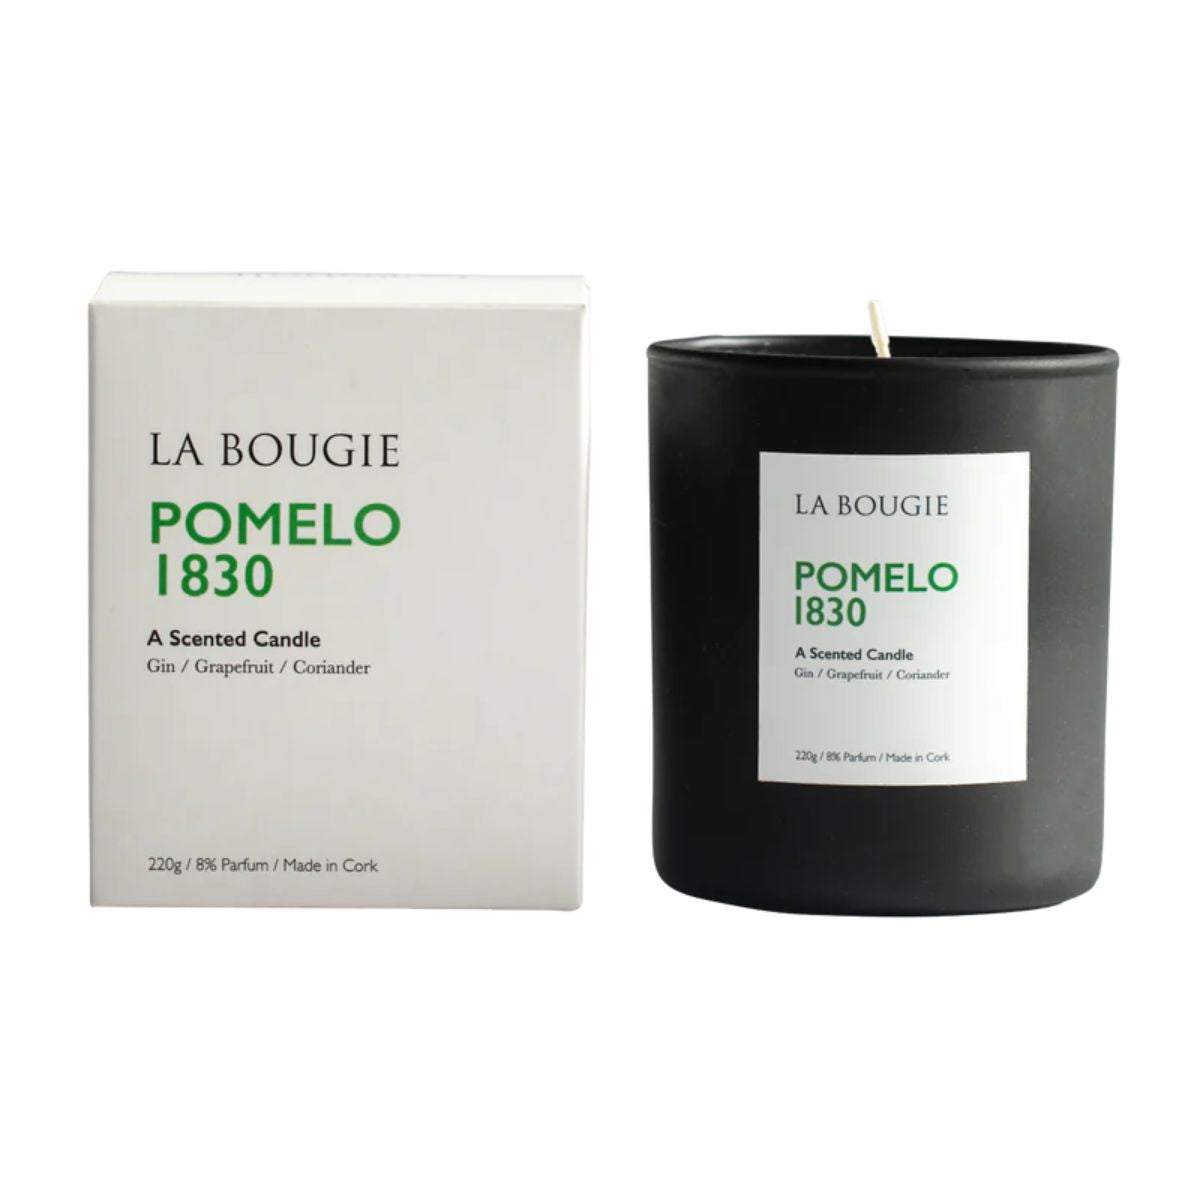 La Bougie Pomelo 1830 Candle